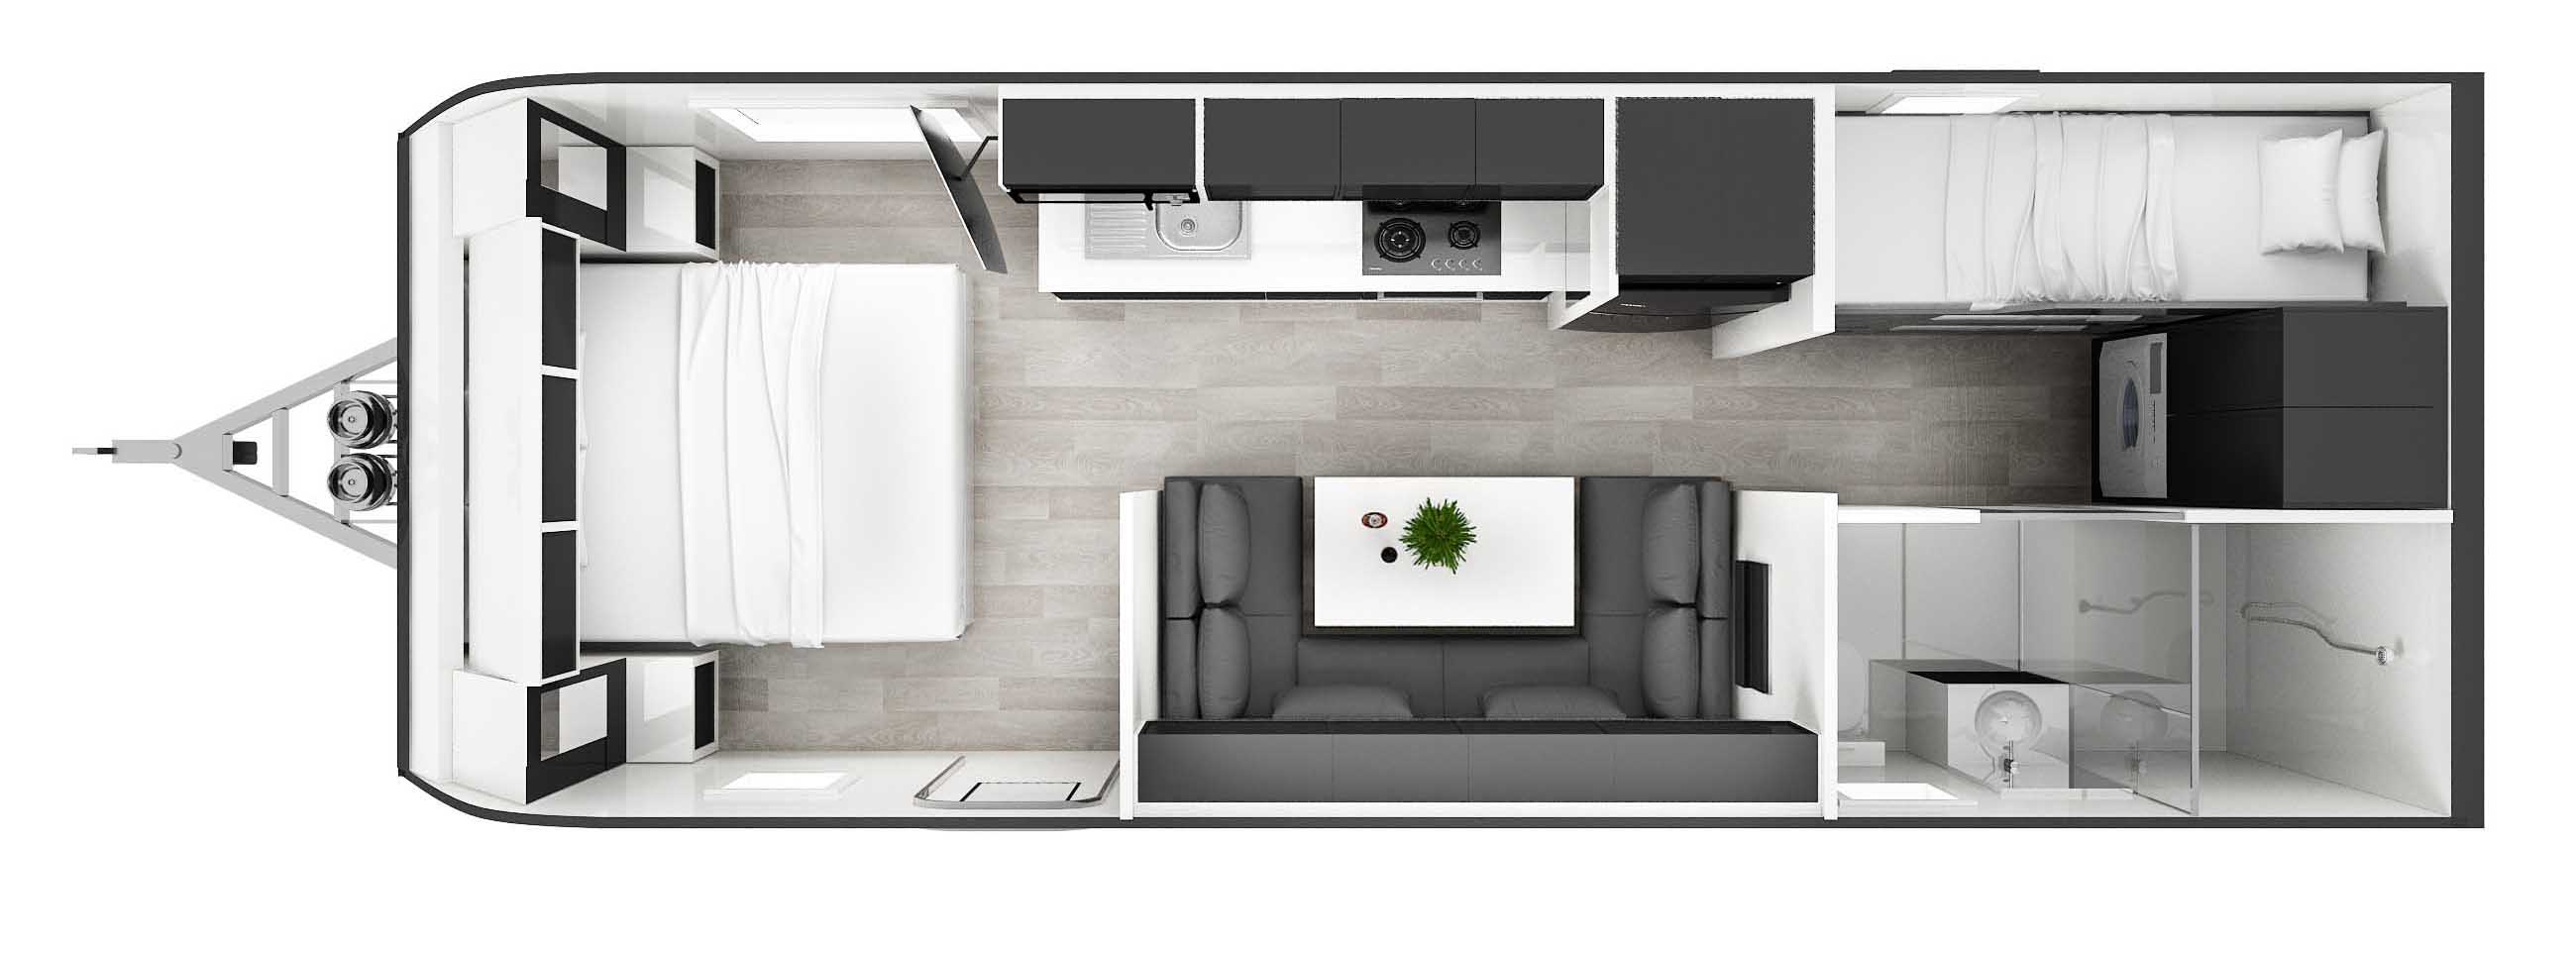 Windsor Genesis 220MD Floorplan